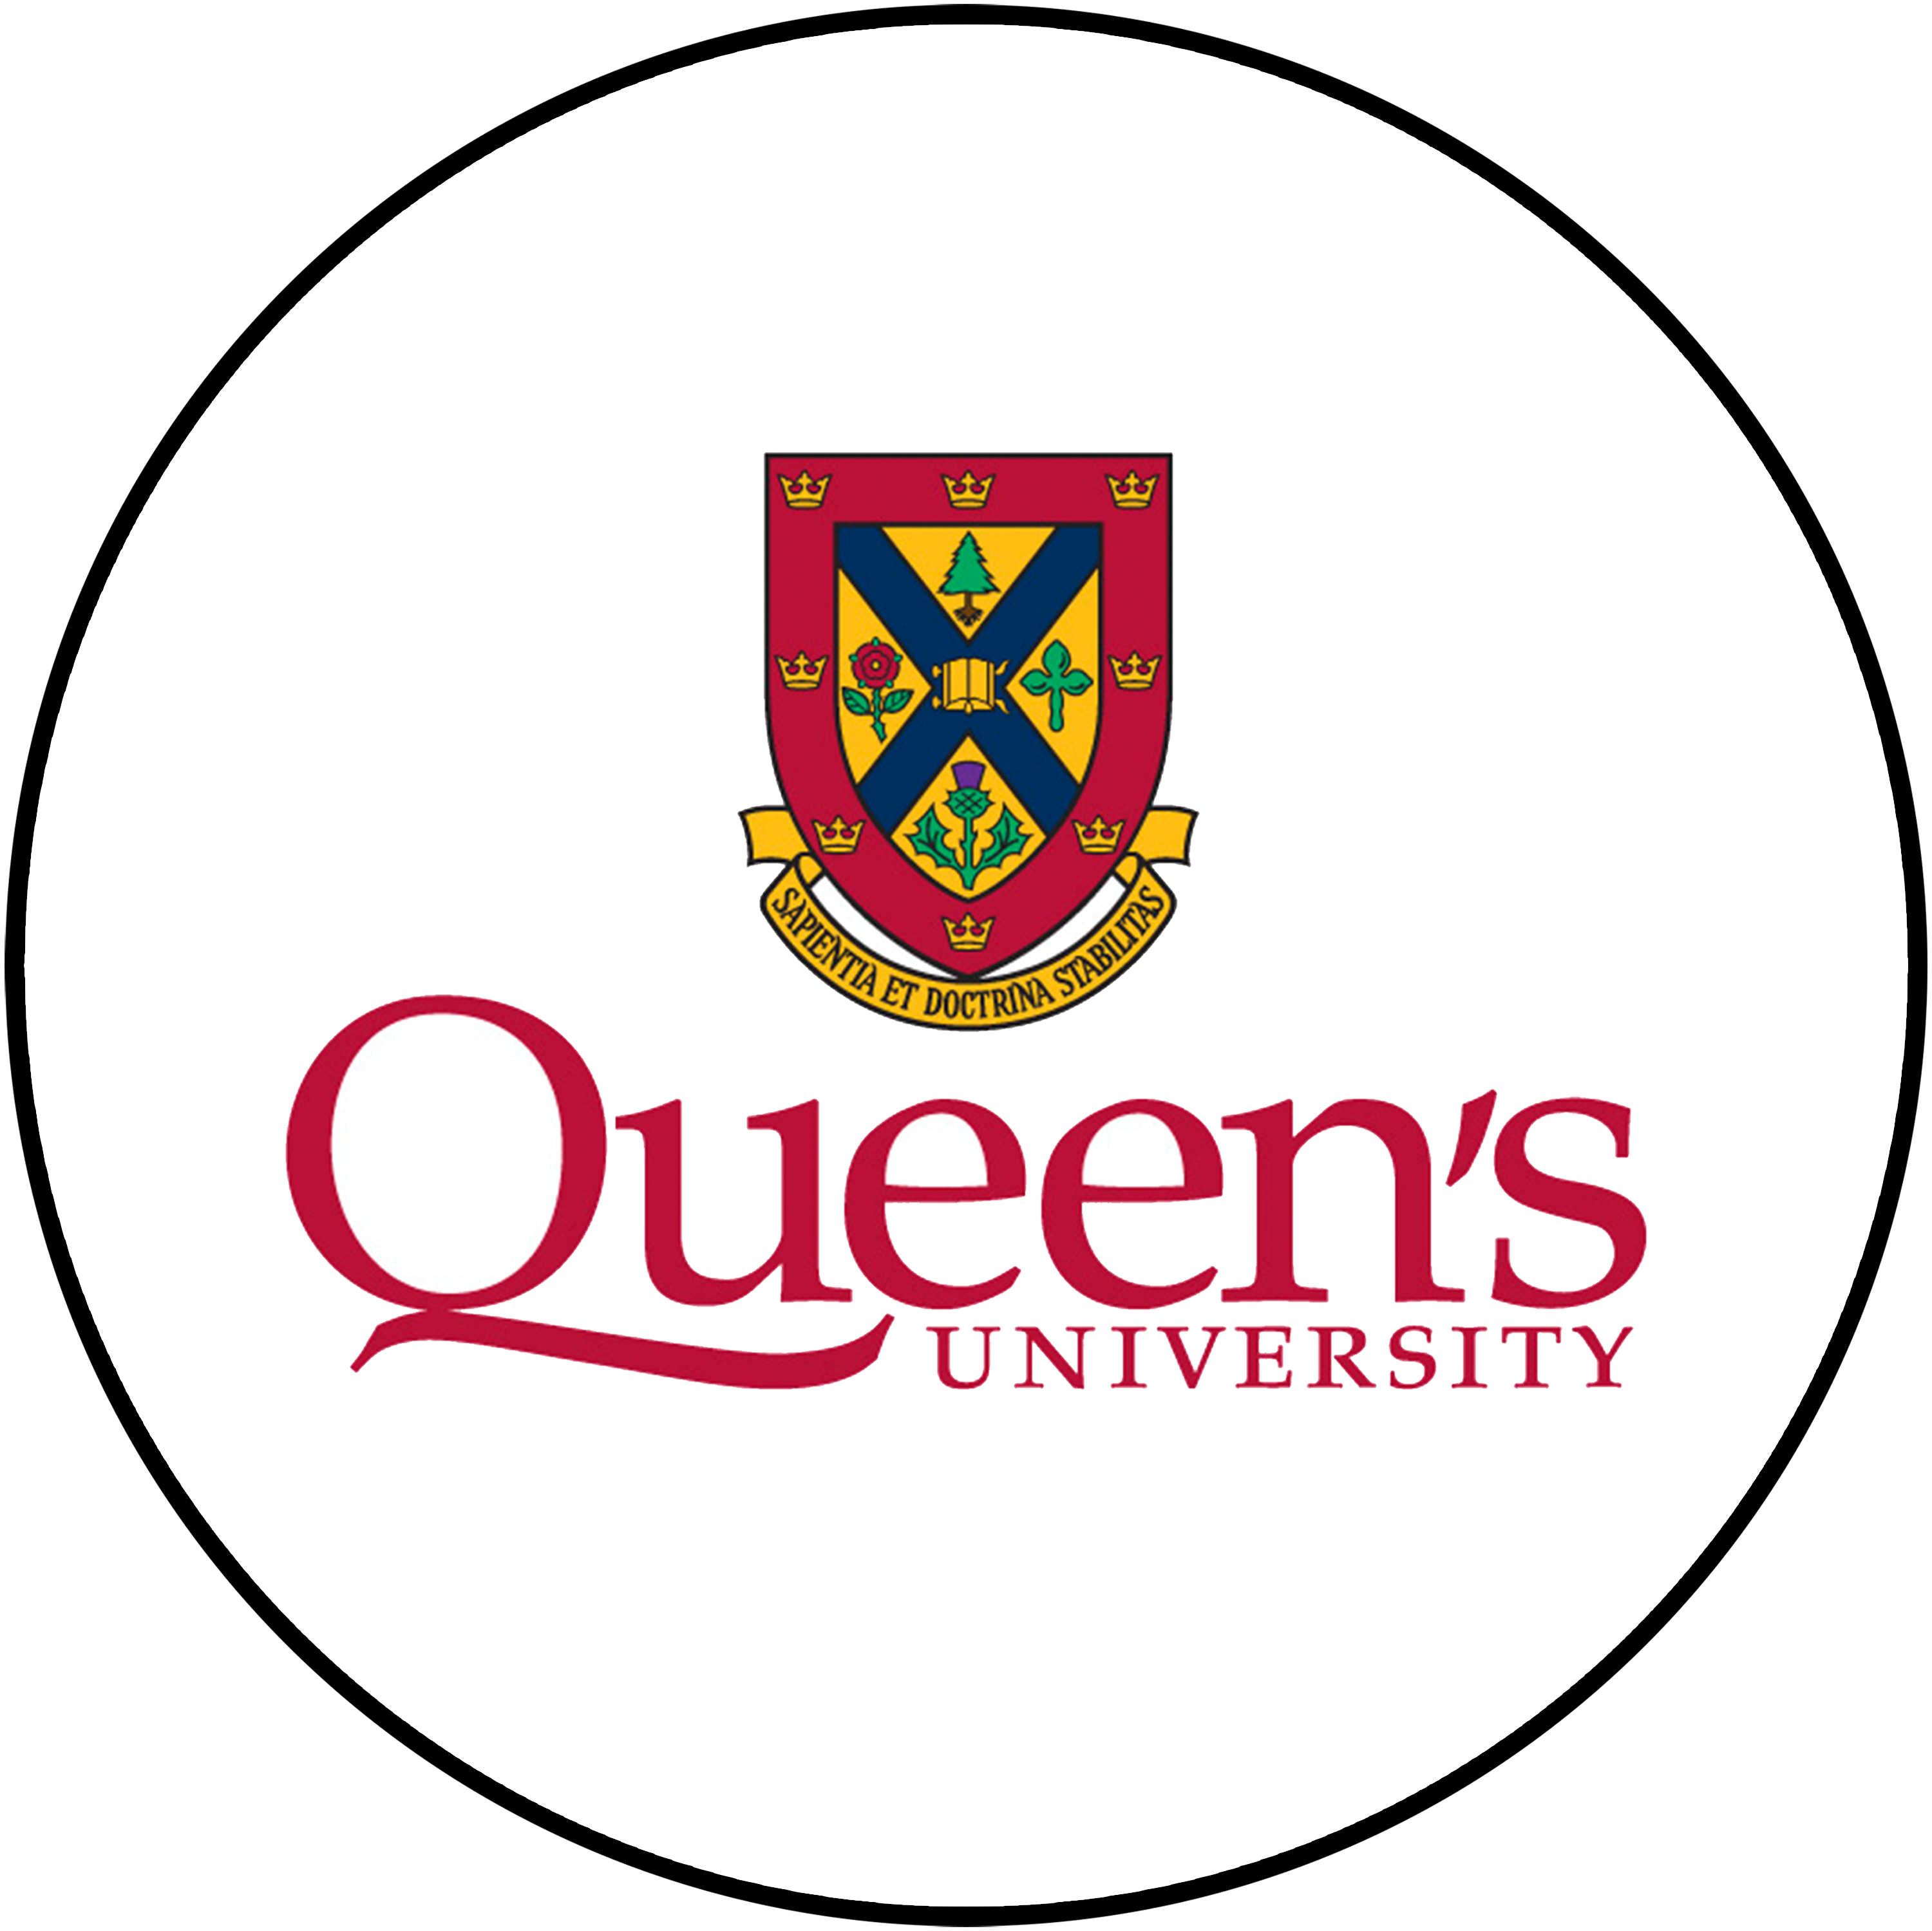 Logo of Queen's University